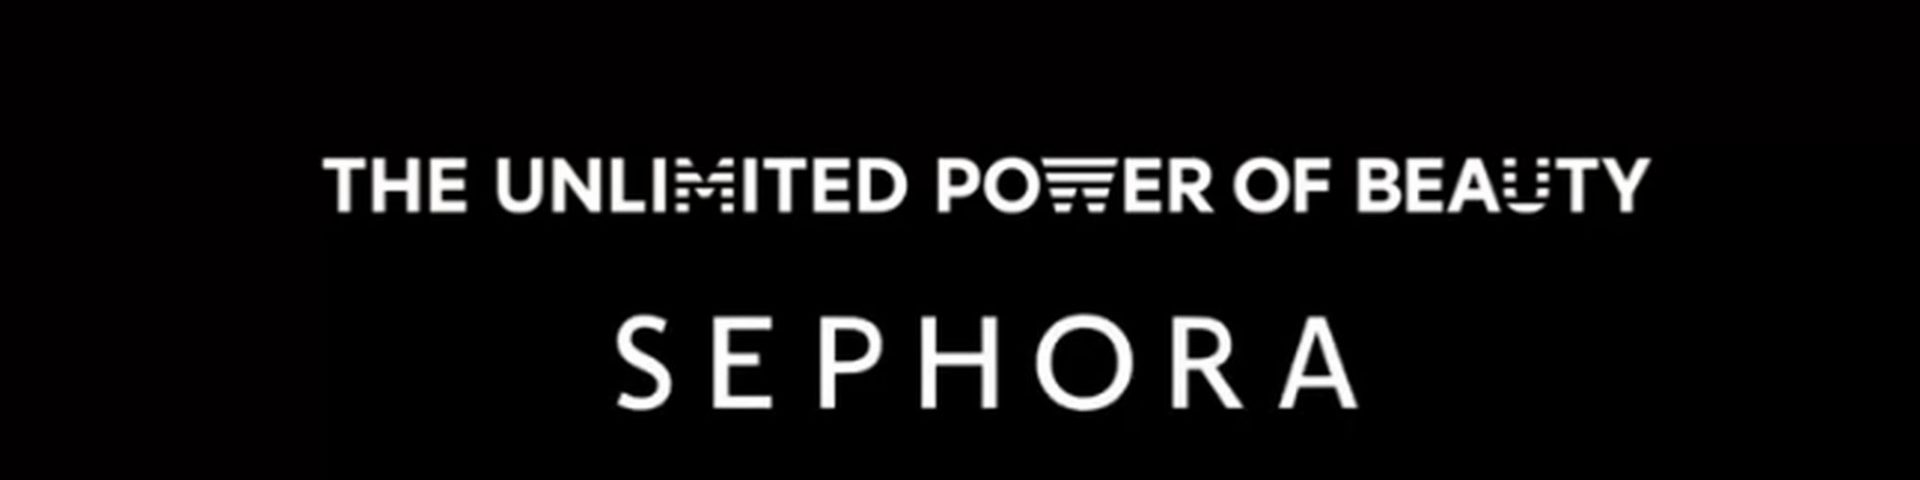 Pubblicità Sephora The Unlimited Power of Beauty: di chi è la canzone che fa da colonna sonora? (Video)